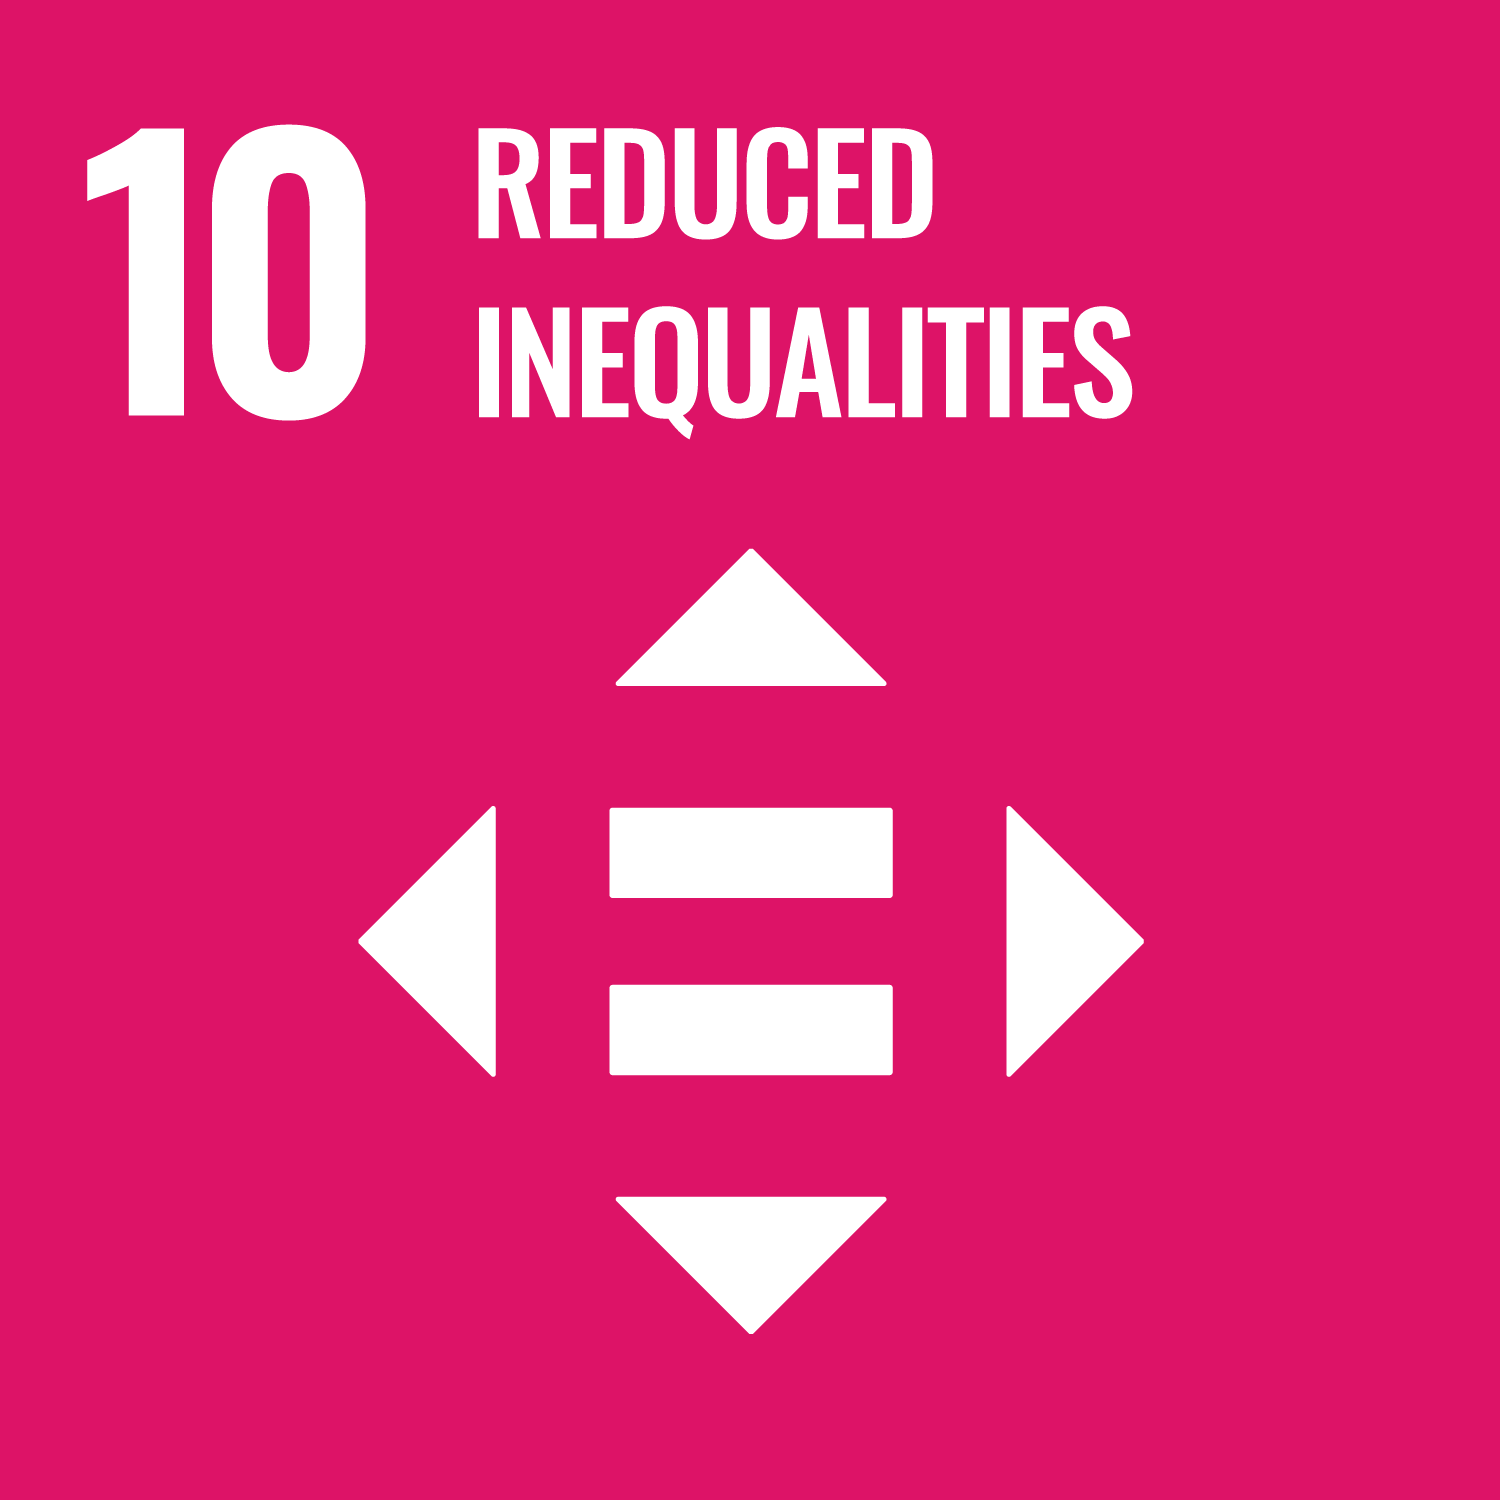 UN SDG 10 image